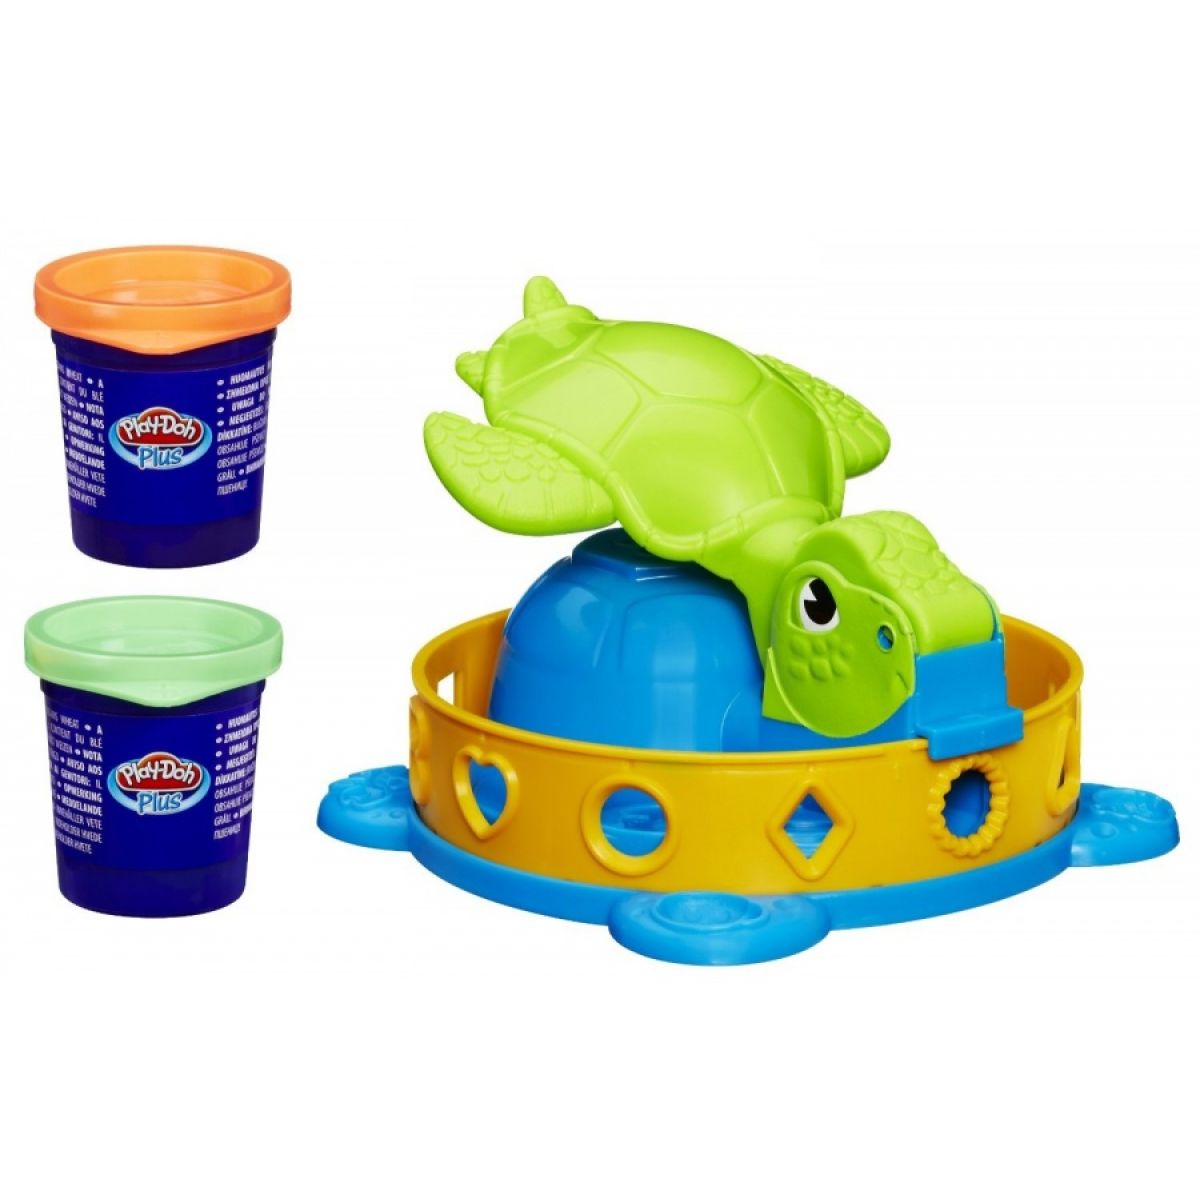 Play-Doh Otáčivá želvička s výběrem vykrajovátek